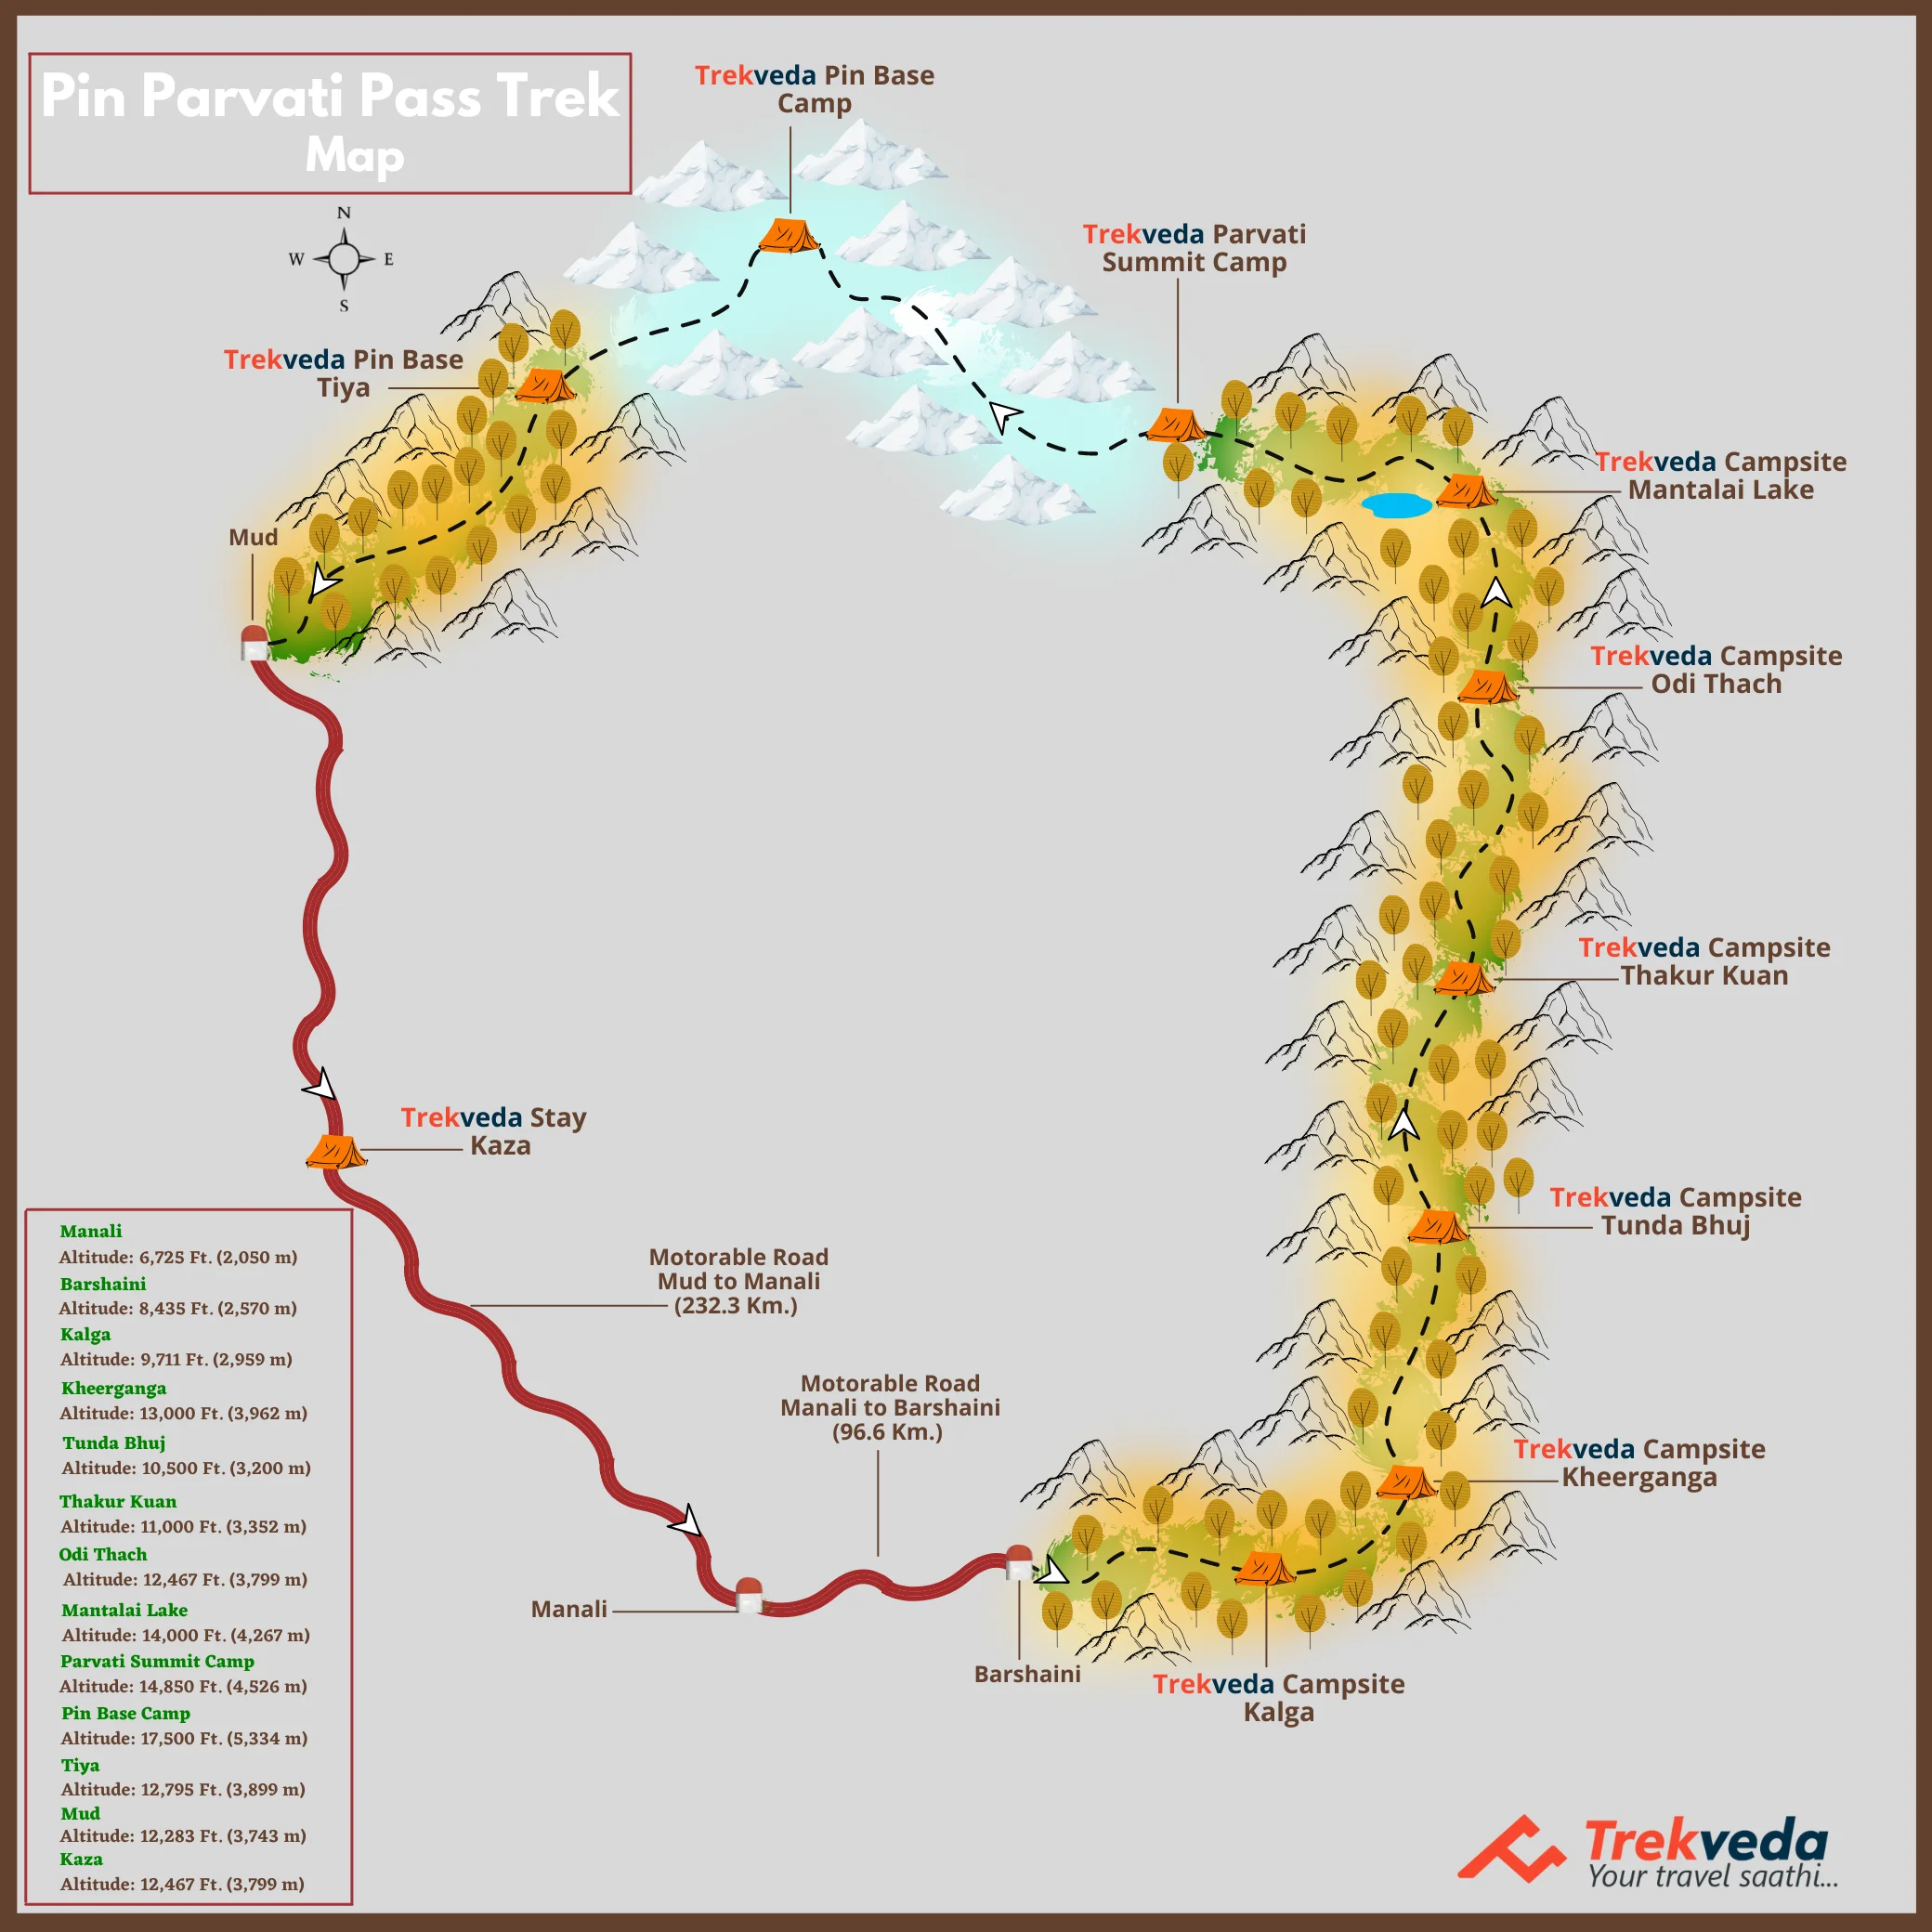 Pin Parvati Pass Trek-Map